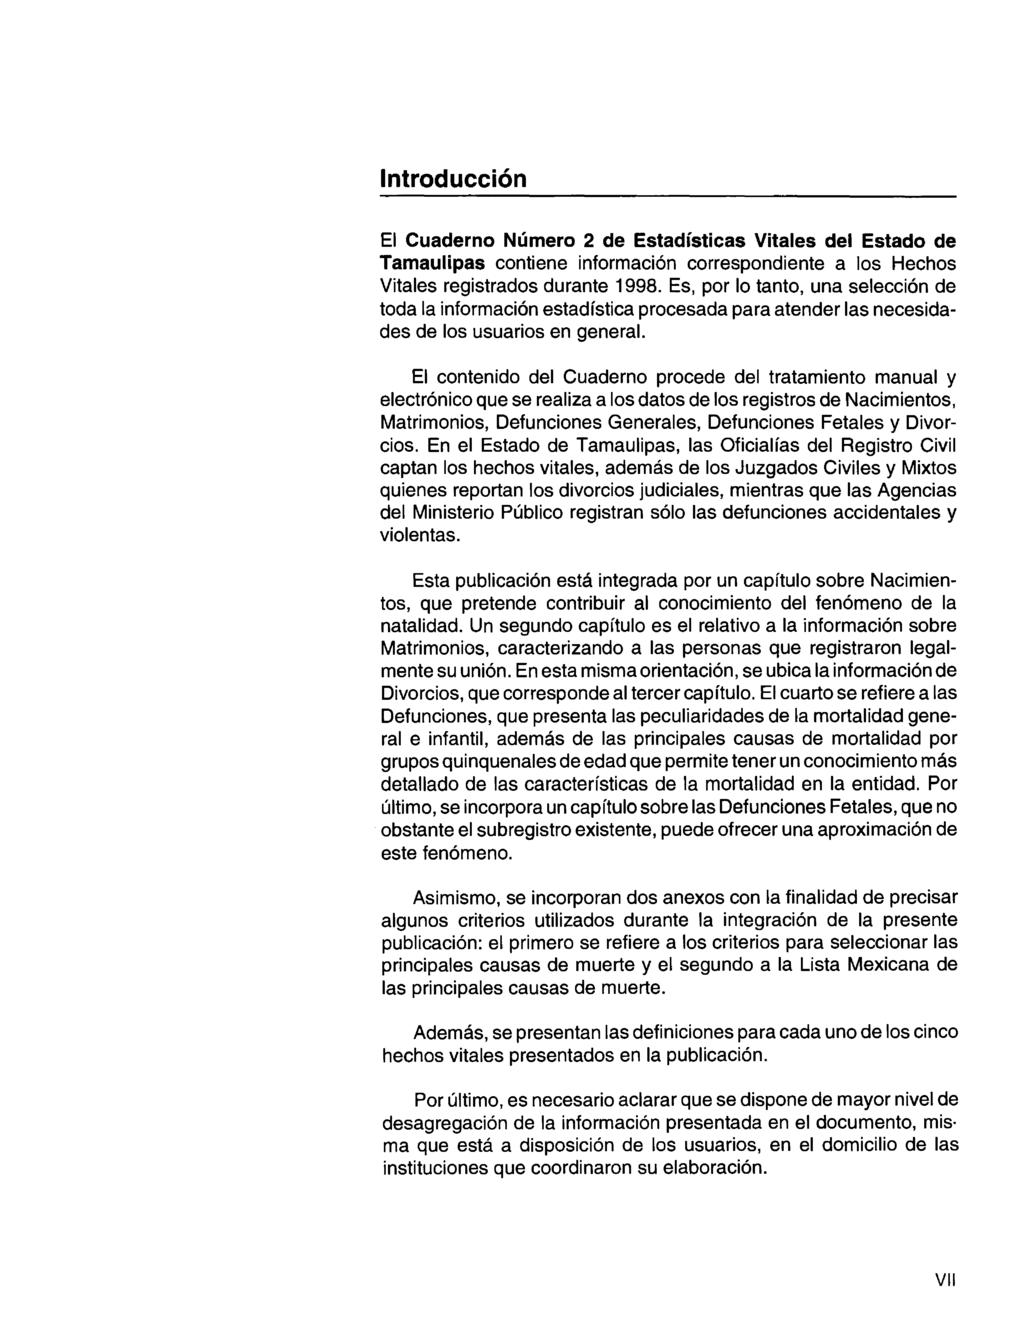 Introducción El Cuaderno Número de Estadísticas Vitales del Estado de Tamaulipas contiene información correspondiente a los Hechos Vitales registrados durante.